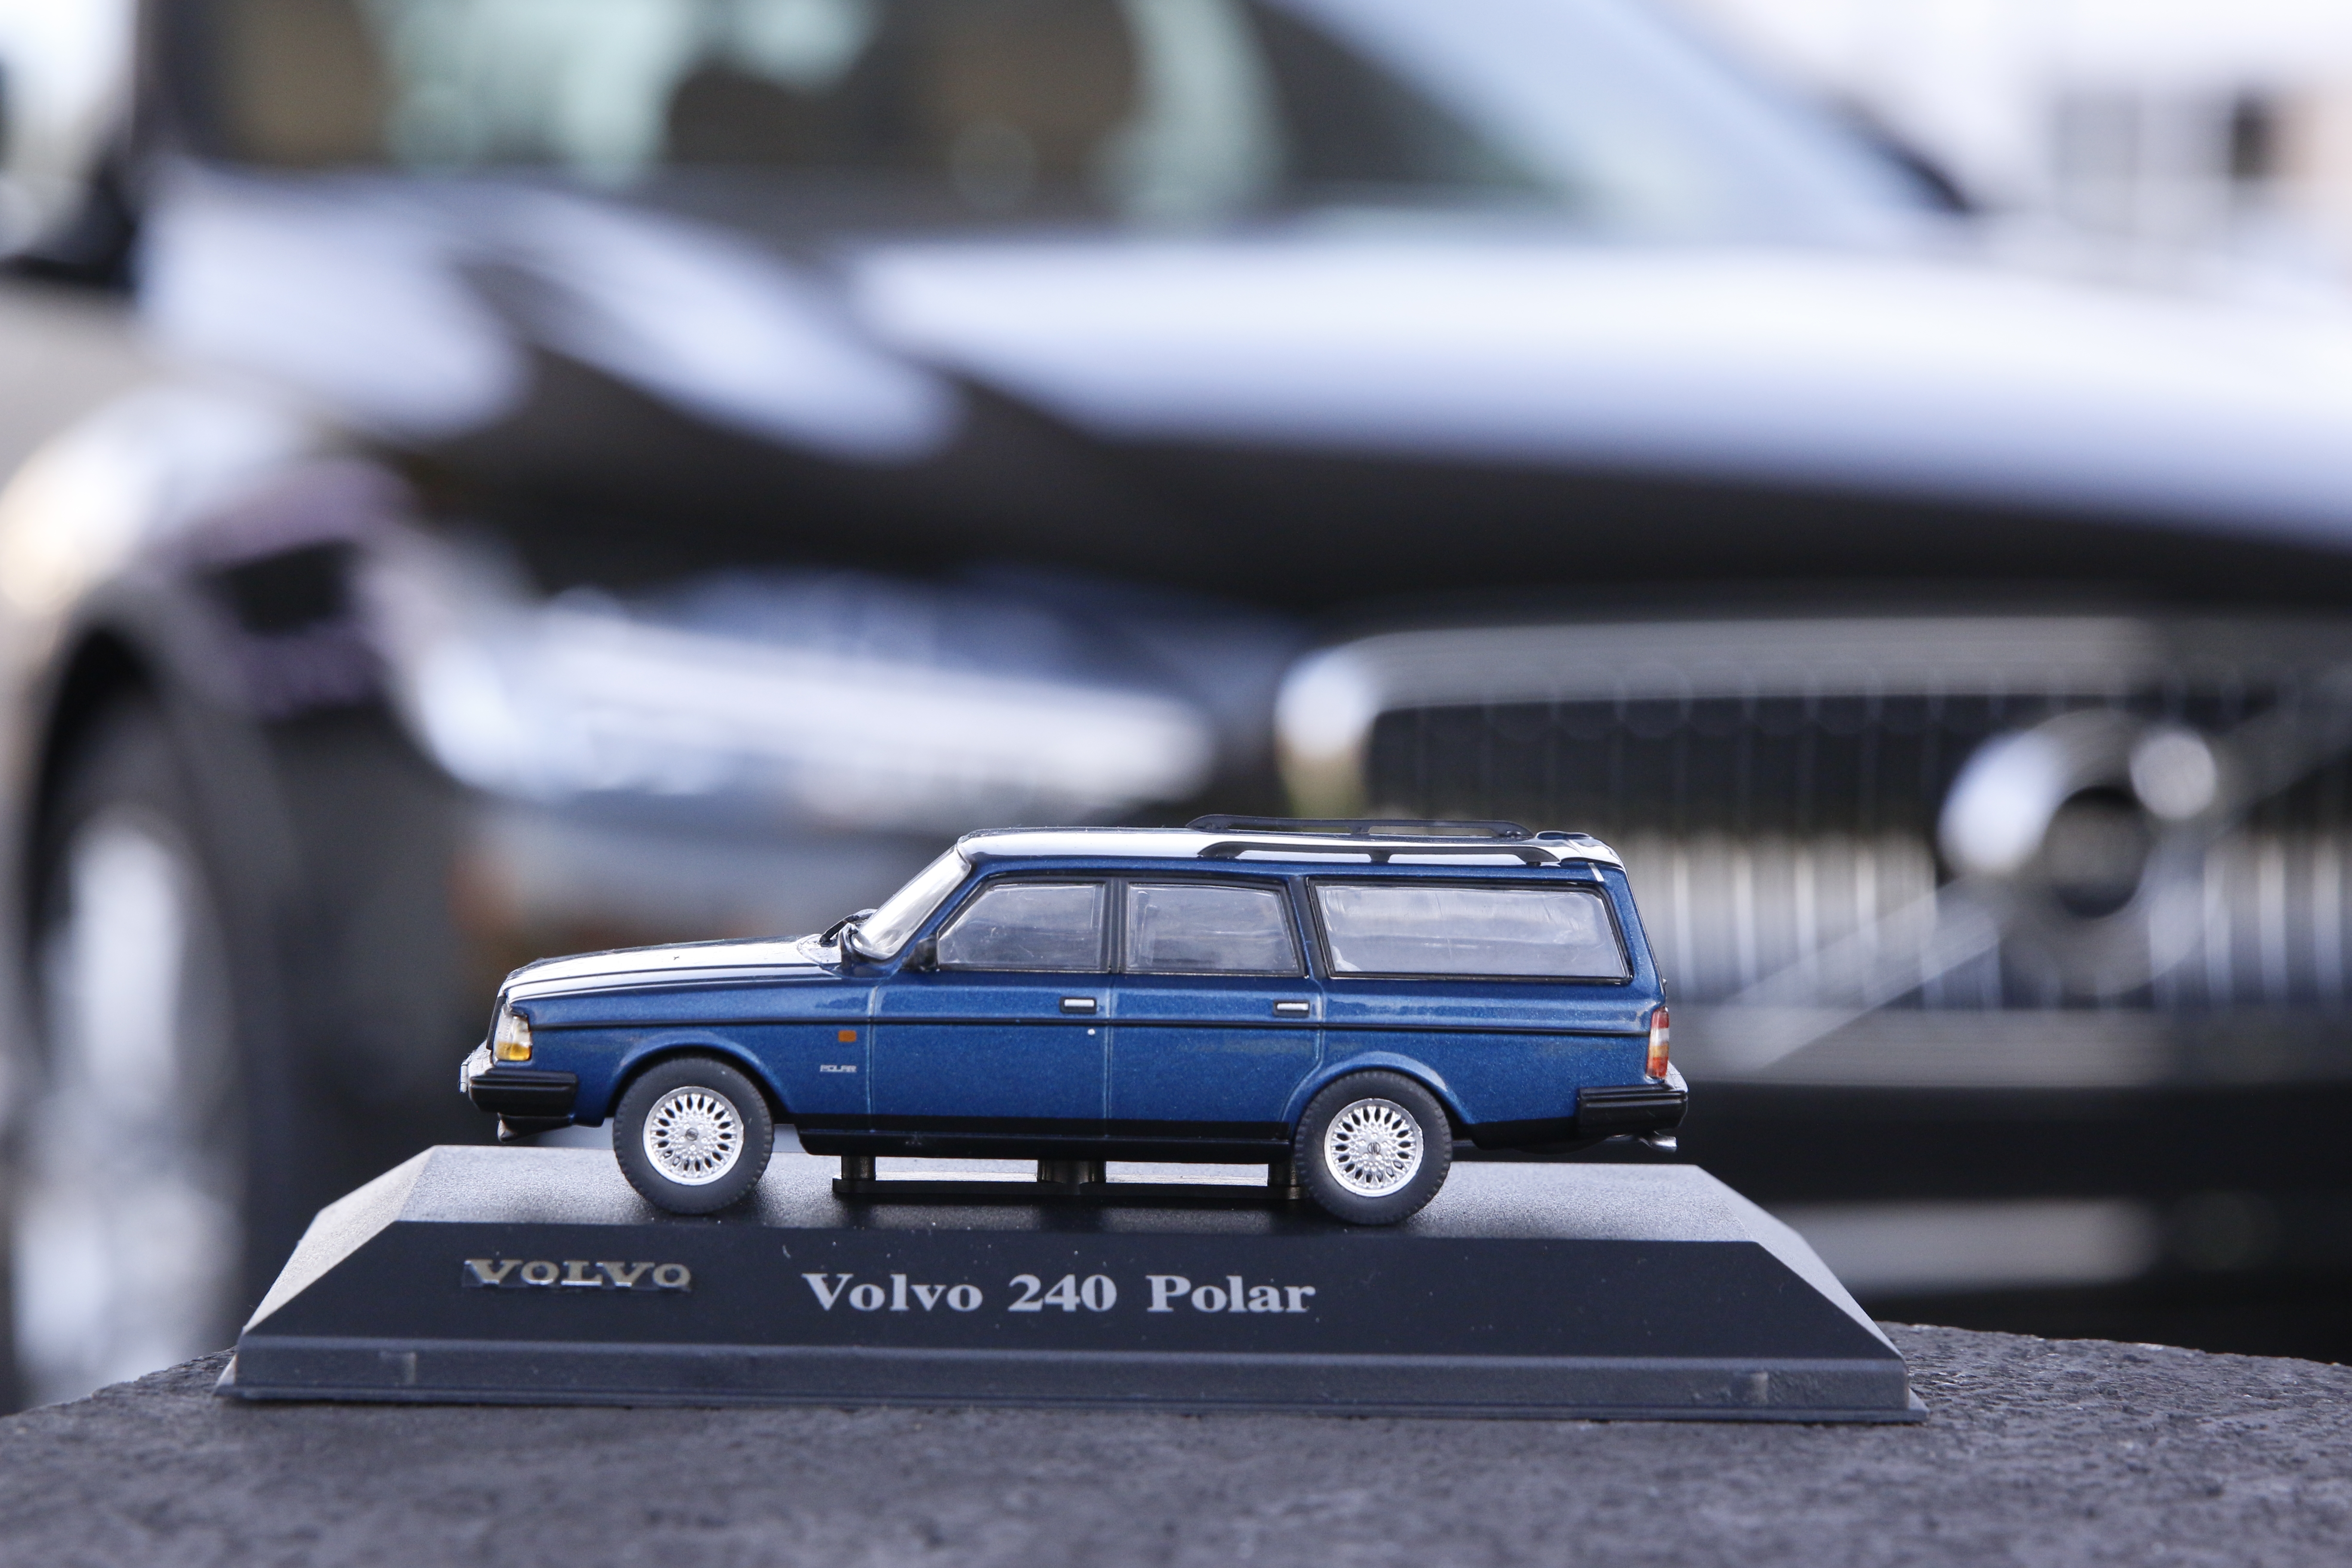 Vervormen ruimte Begraafplaats De geschiedenis van Volvo in miniatuur - Automobilia